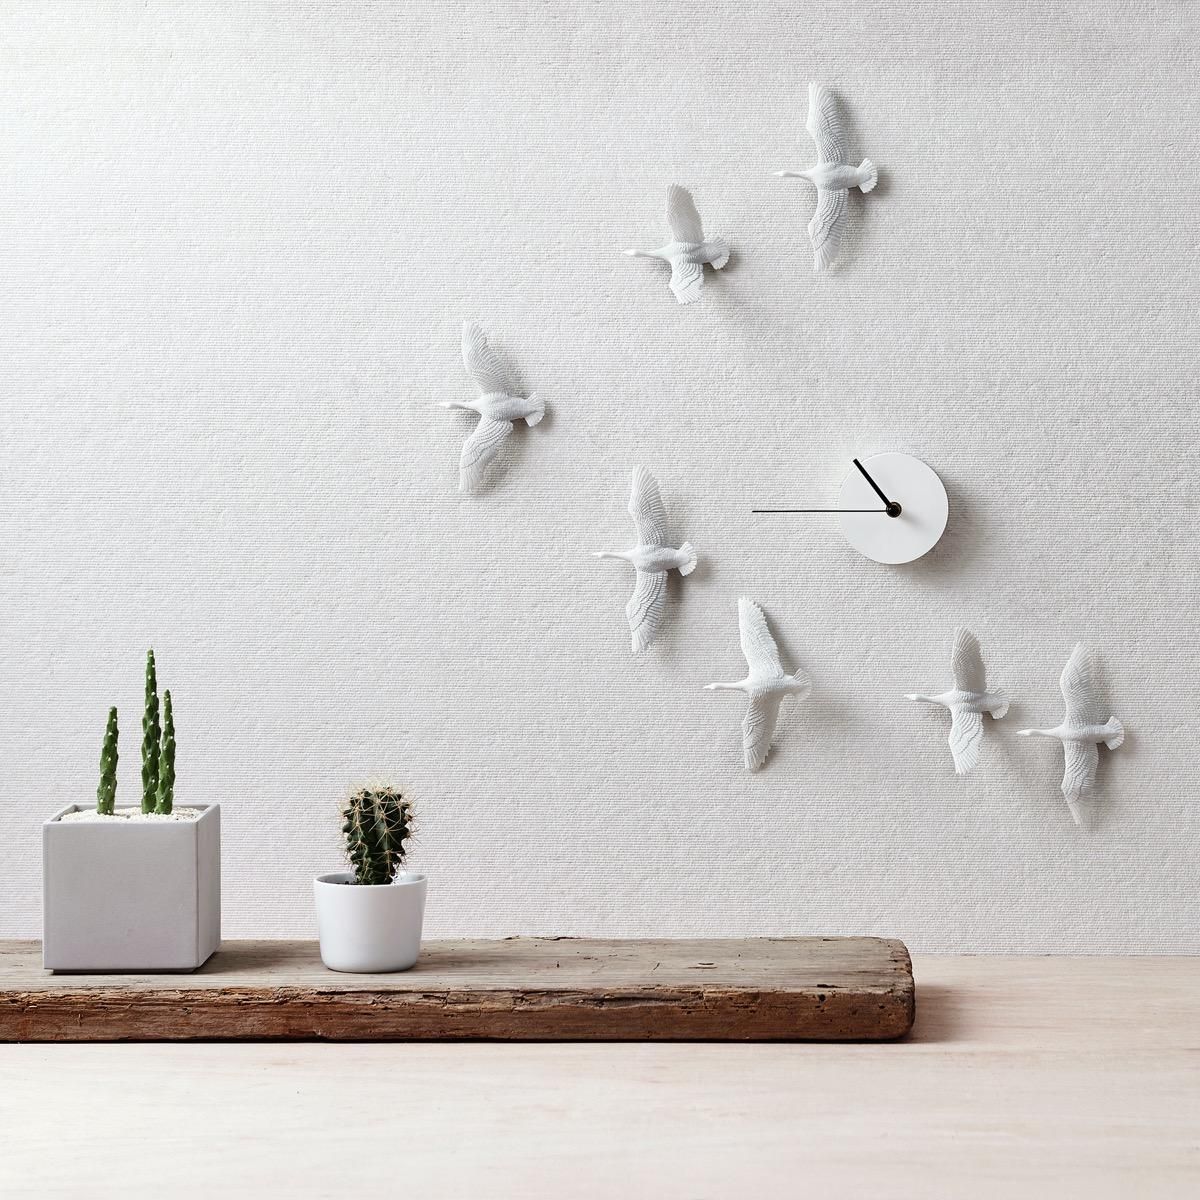 Настенные часы с птицами, которые станут украшением любого интерьера: фото